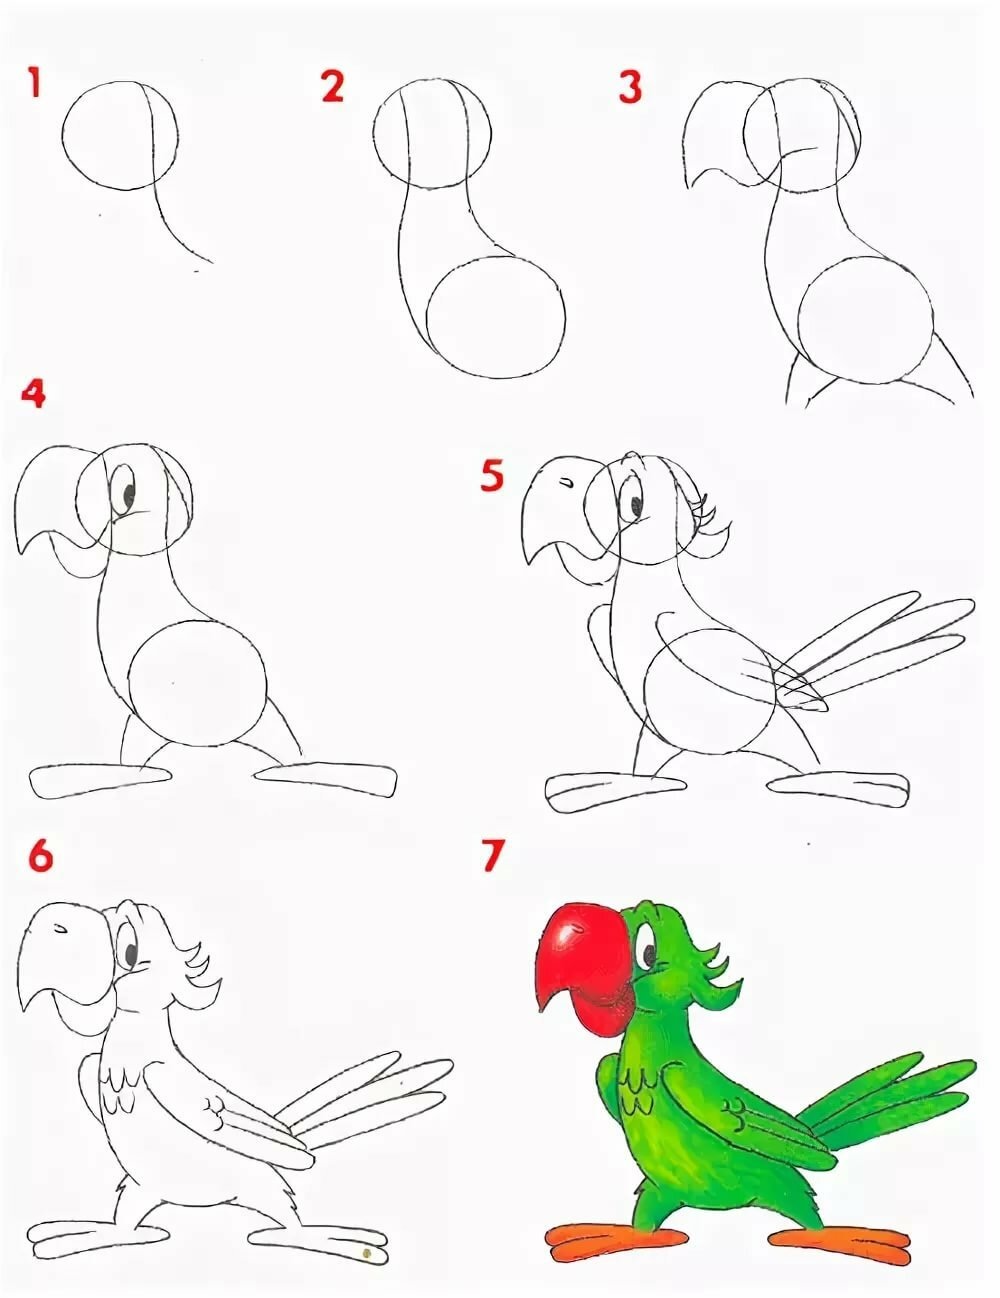 Как начать рисовать. Пошаговое рисование. Поэтапное рисование карандашом. Поэтапное рисование животных. Уроки поэтапного рисования для детей.